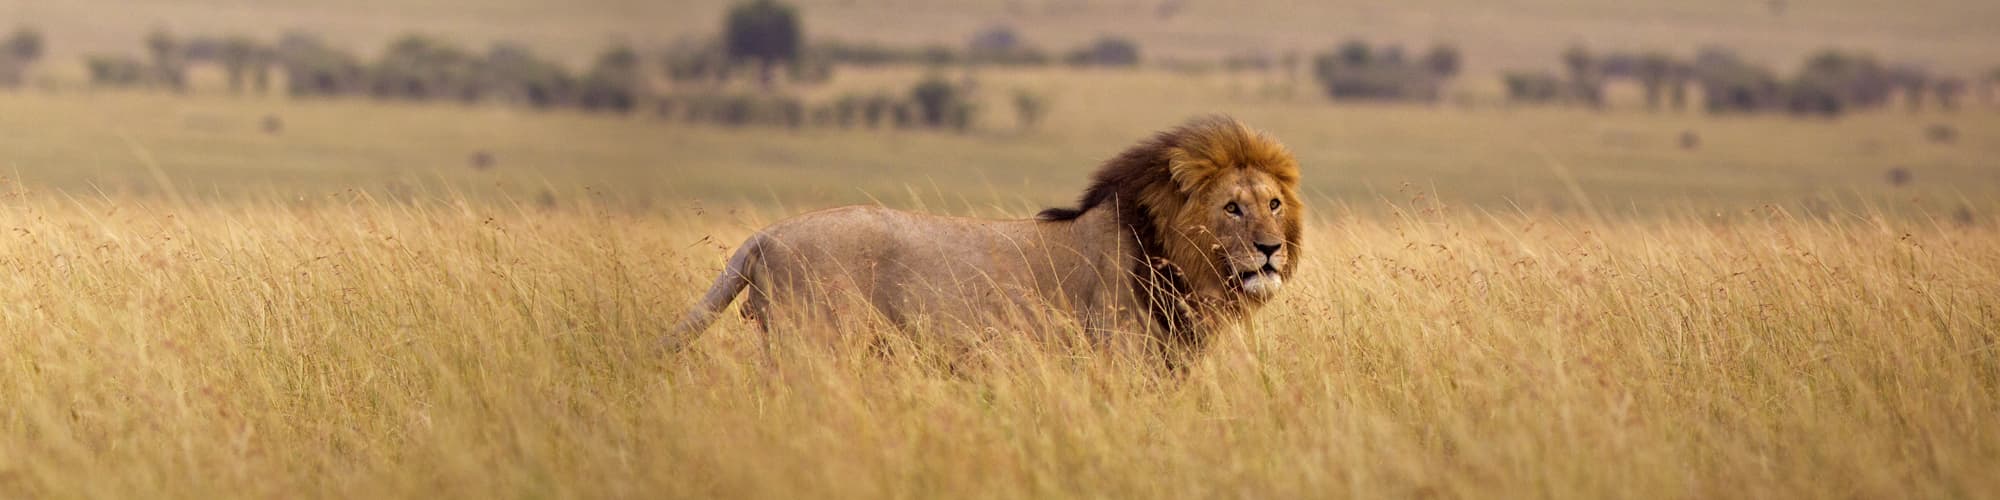 Voyage, trek et safari au Kenya © WL Davies / Istock